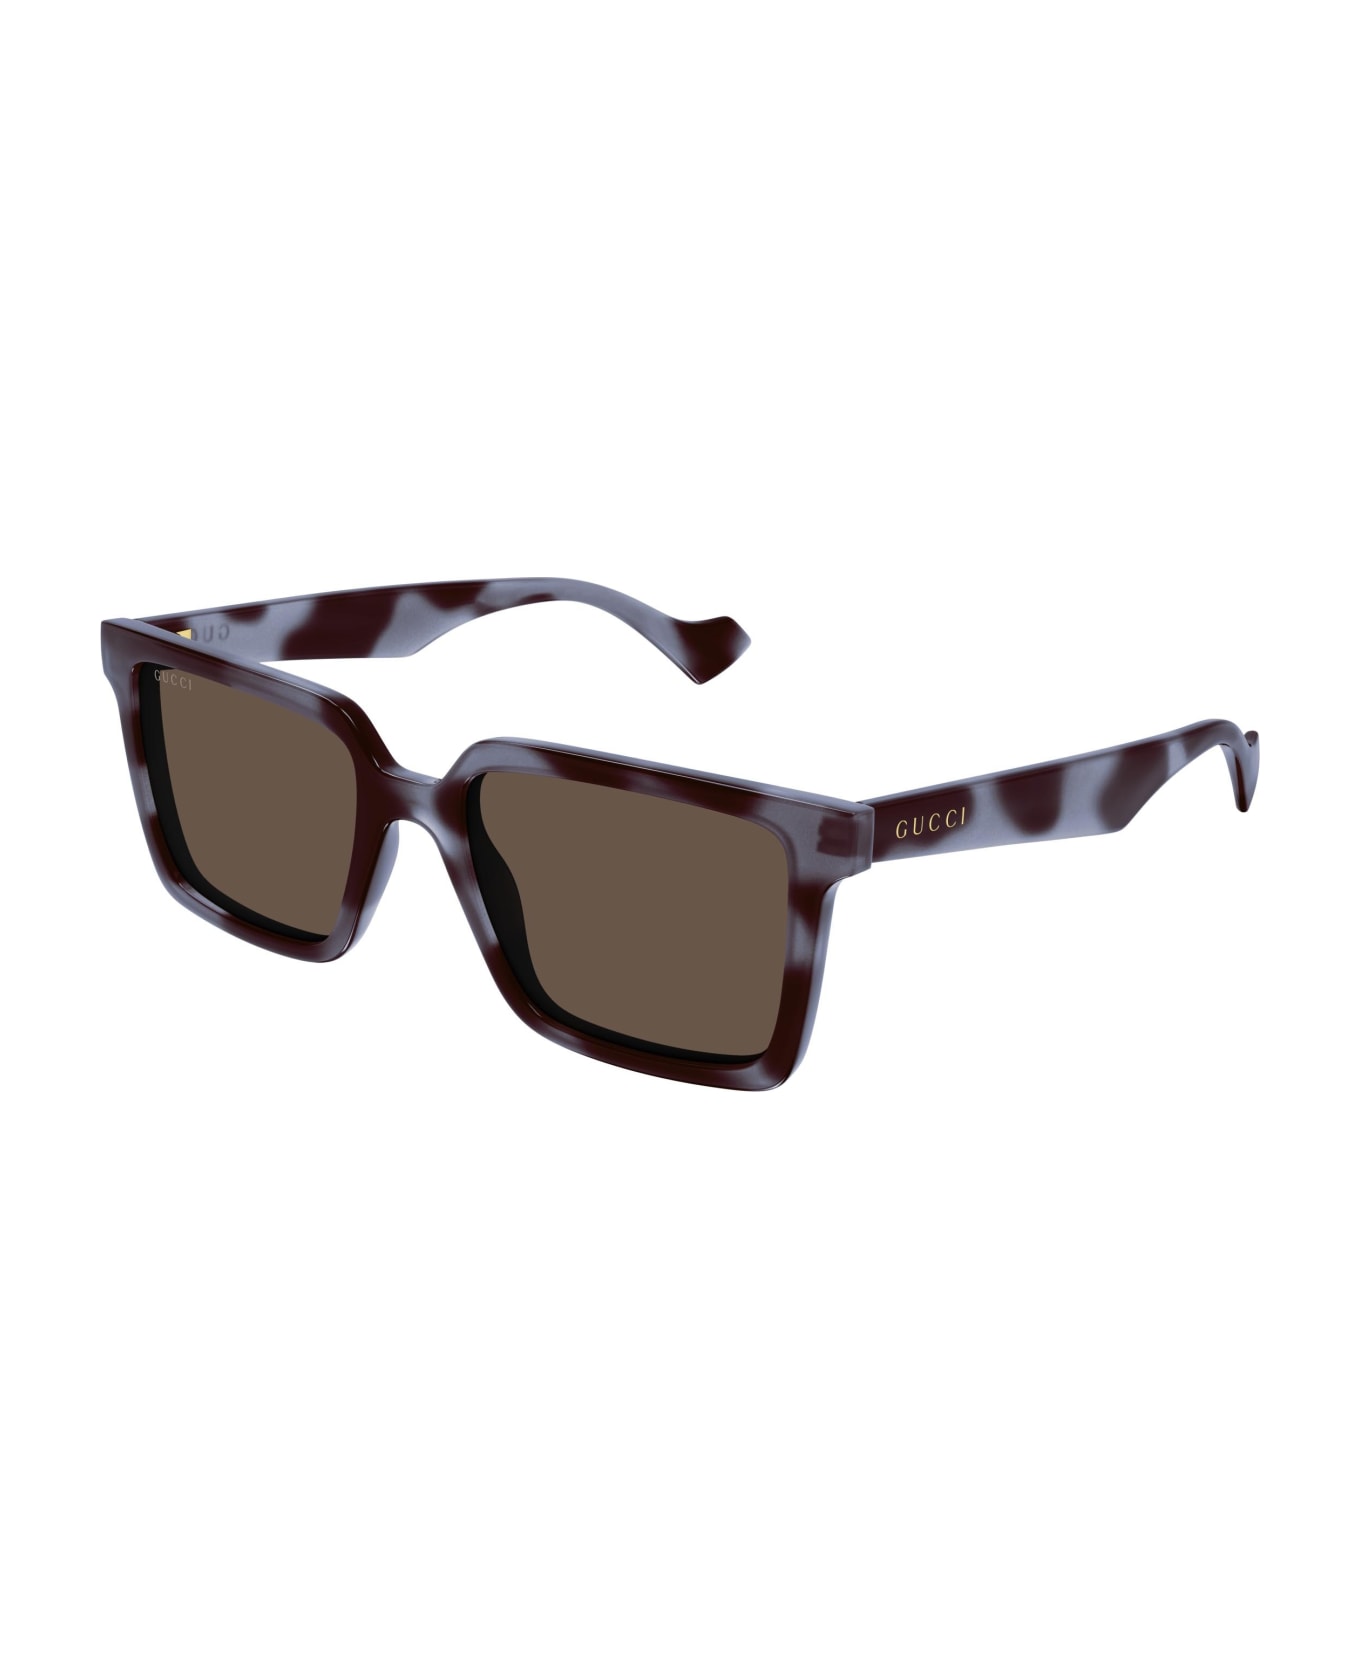 Gucci Eyewear Sunglasses - Grigio/Marrone サングラス